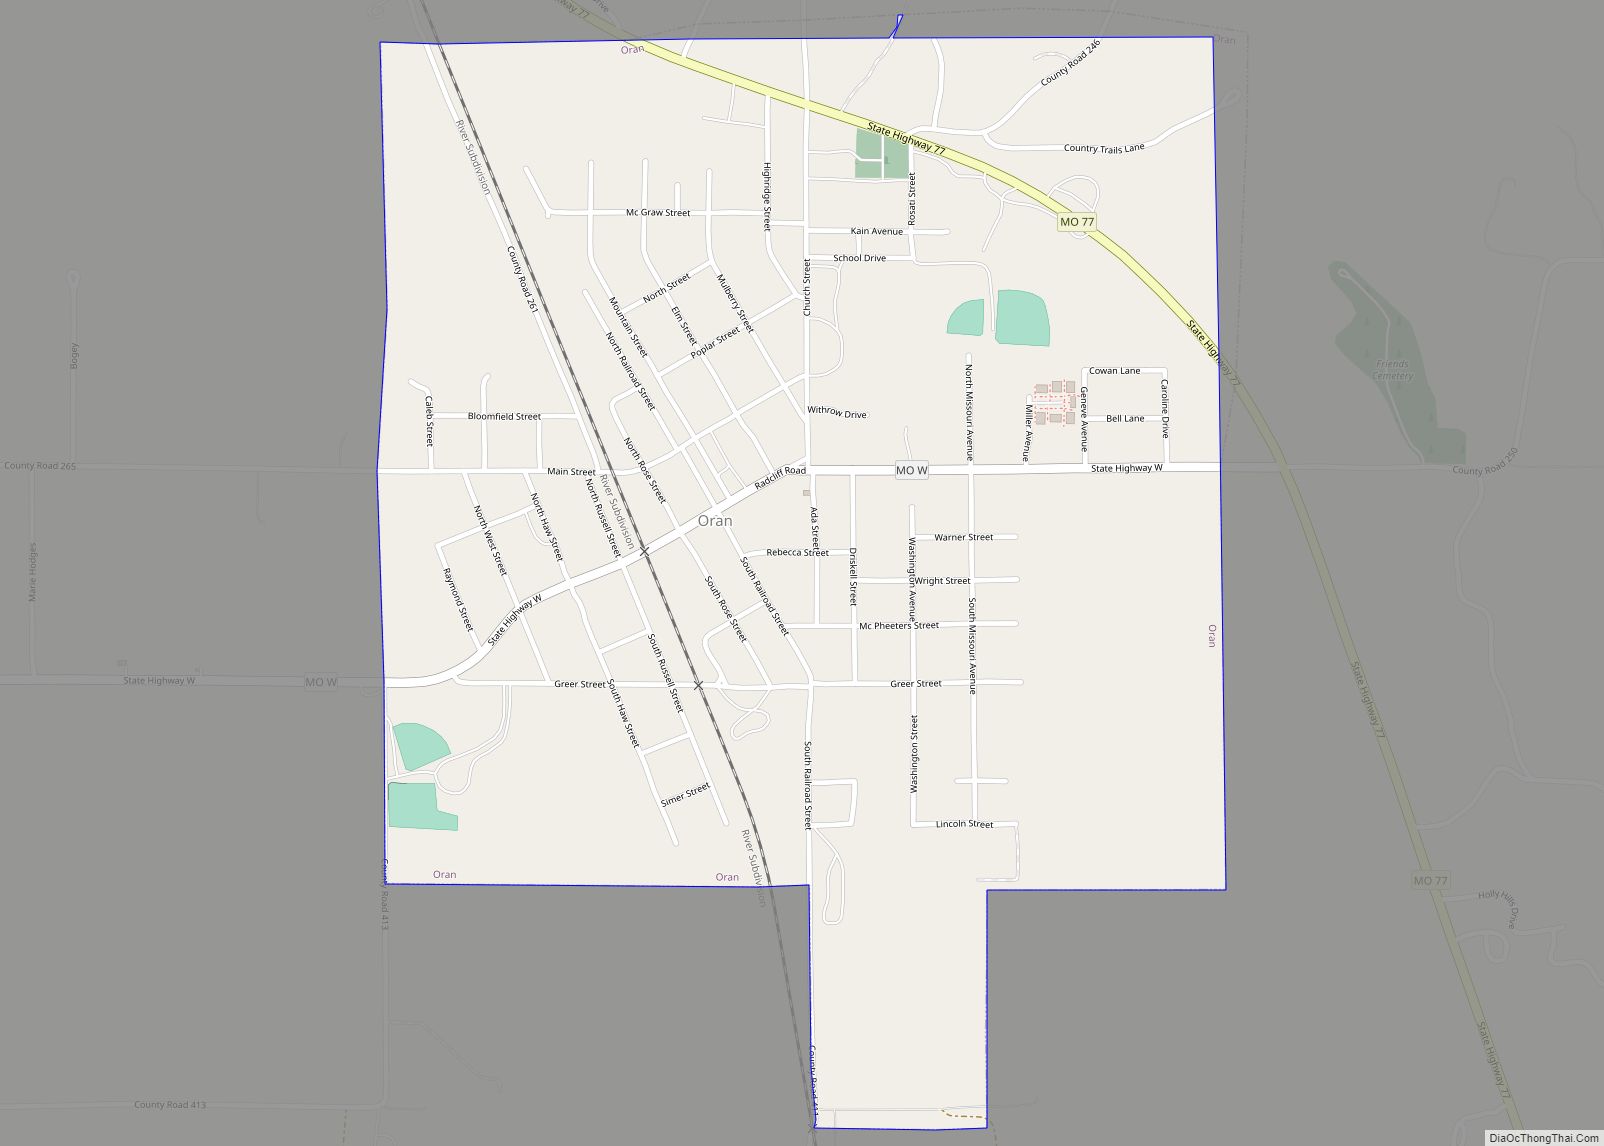 Map of Oran city